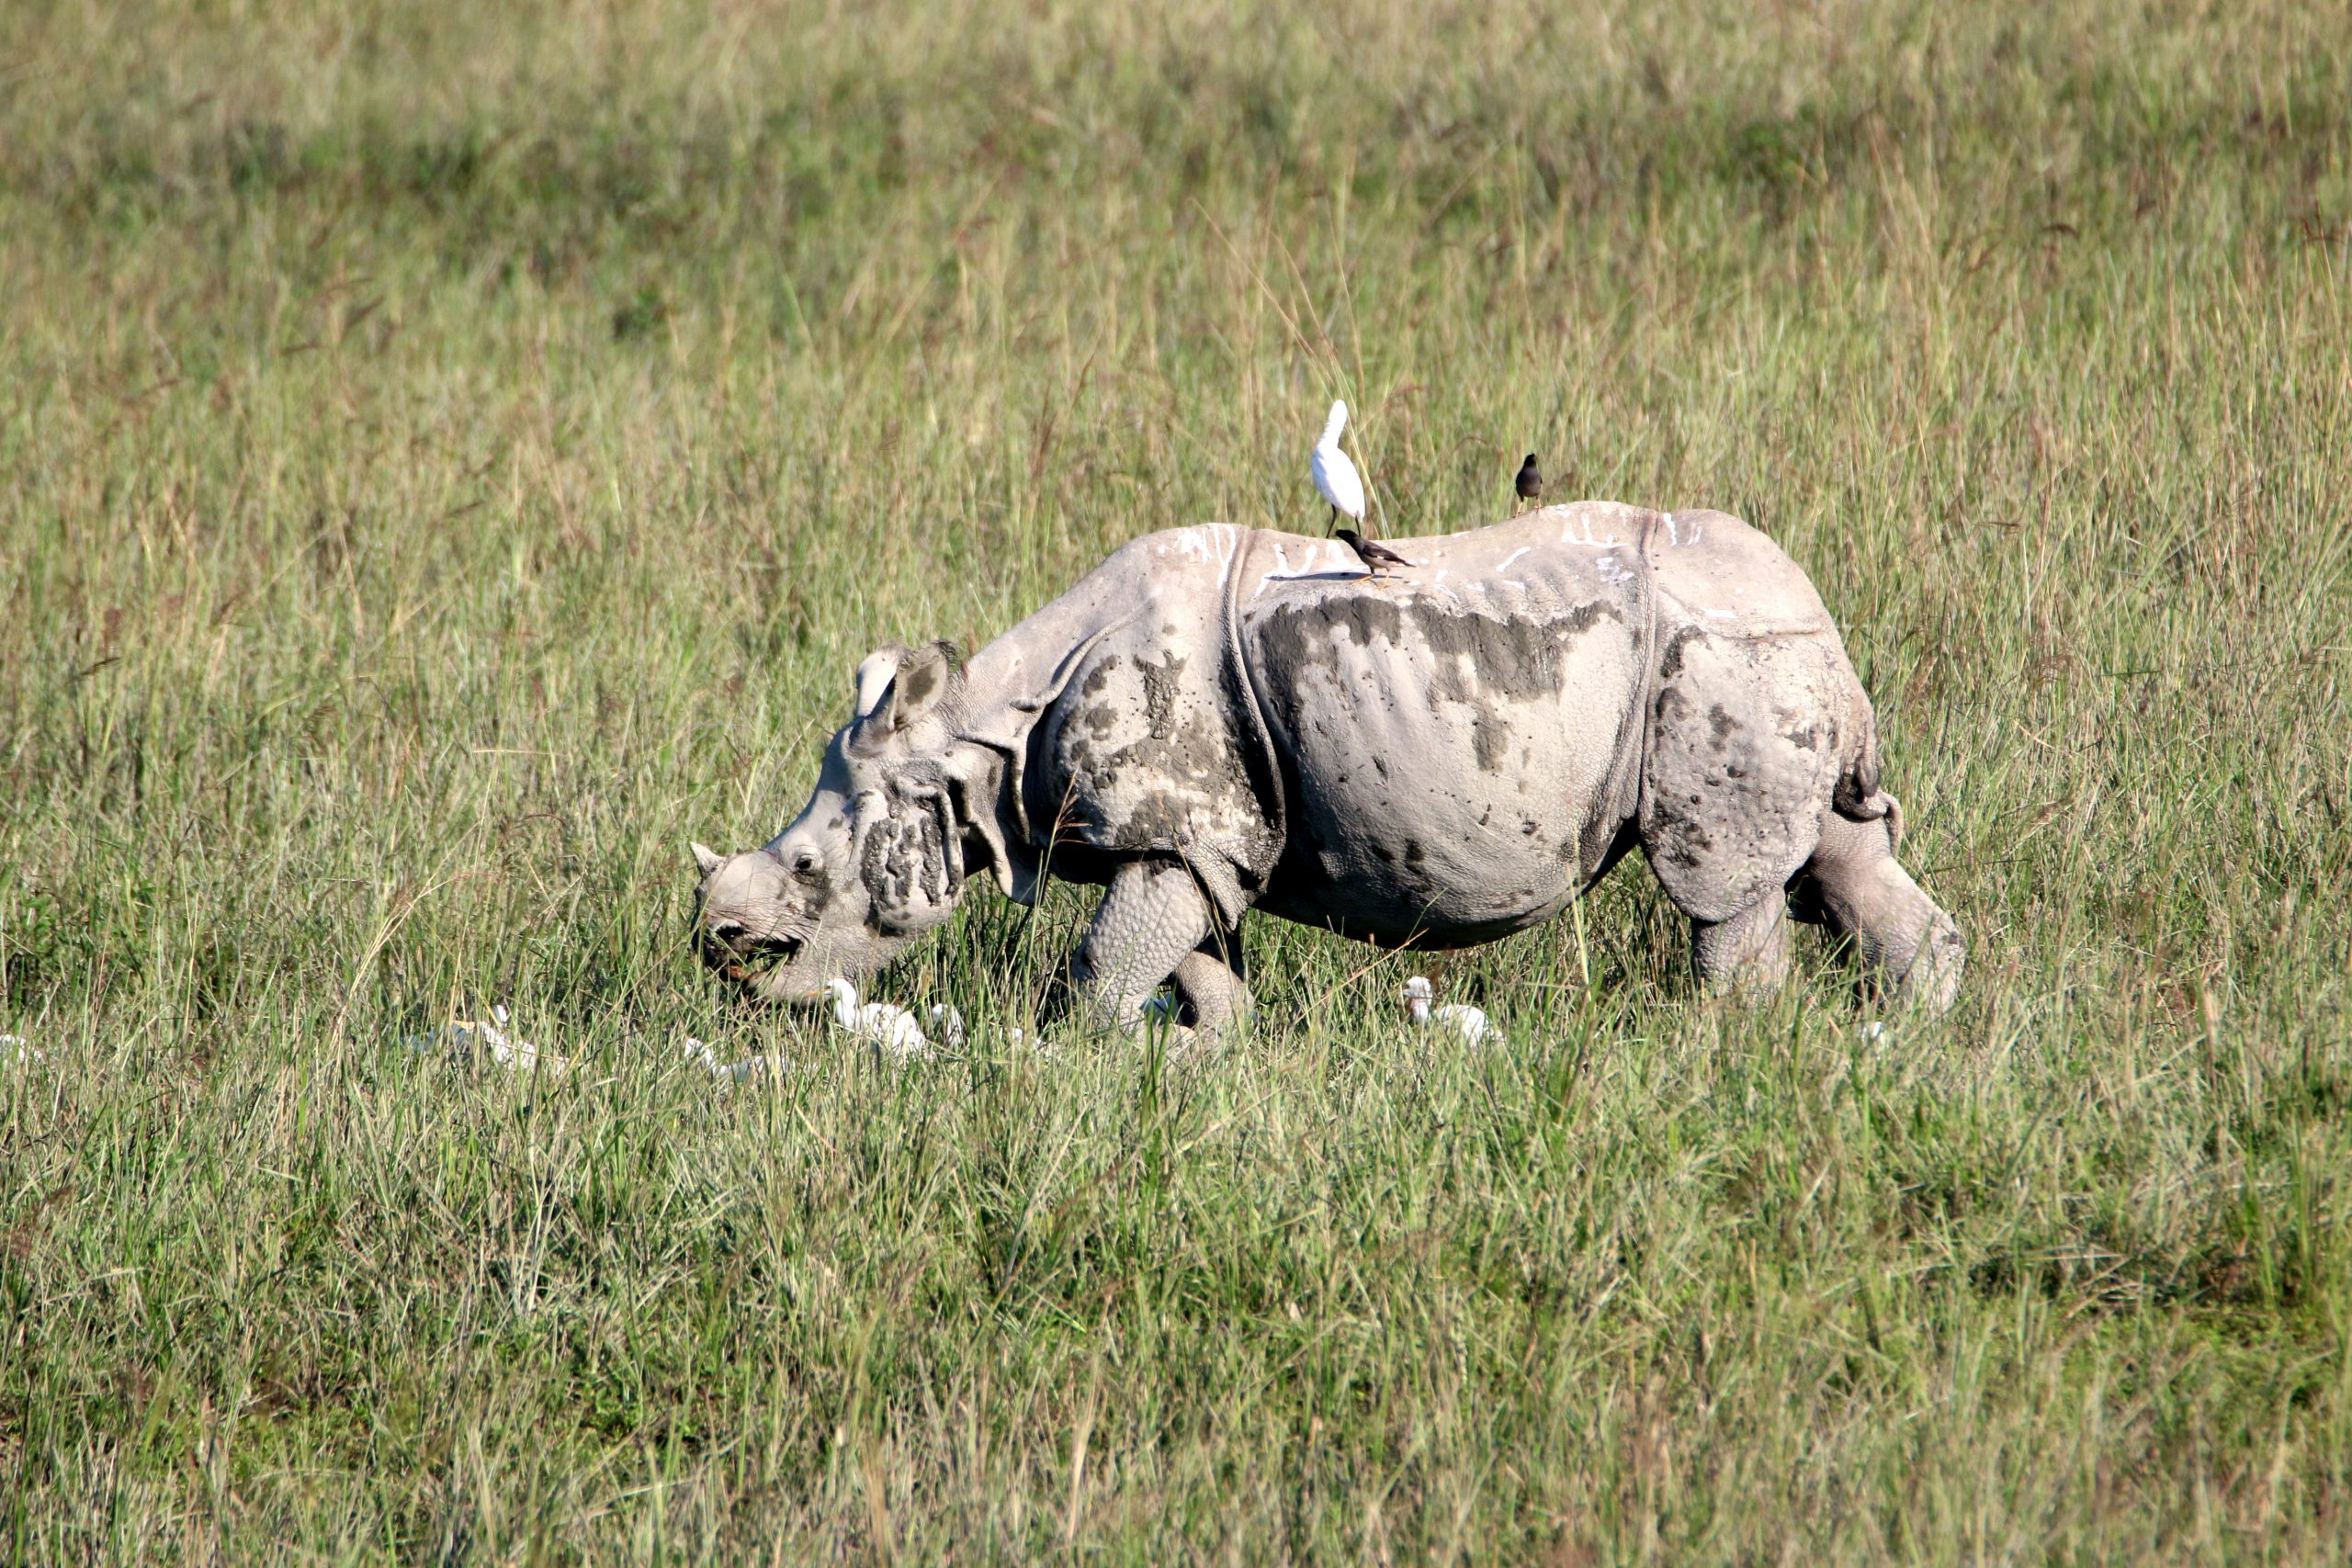 A rhino in a pasture